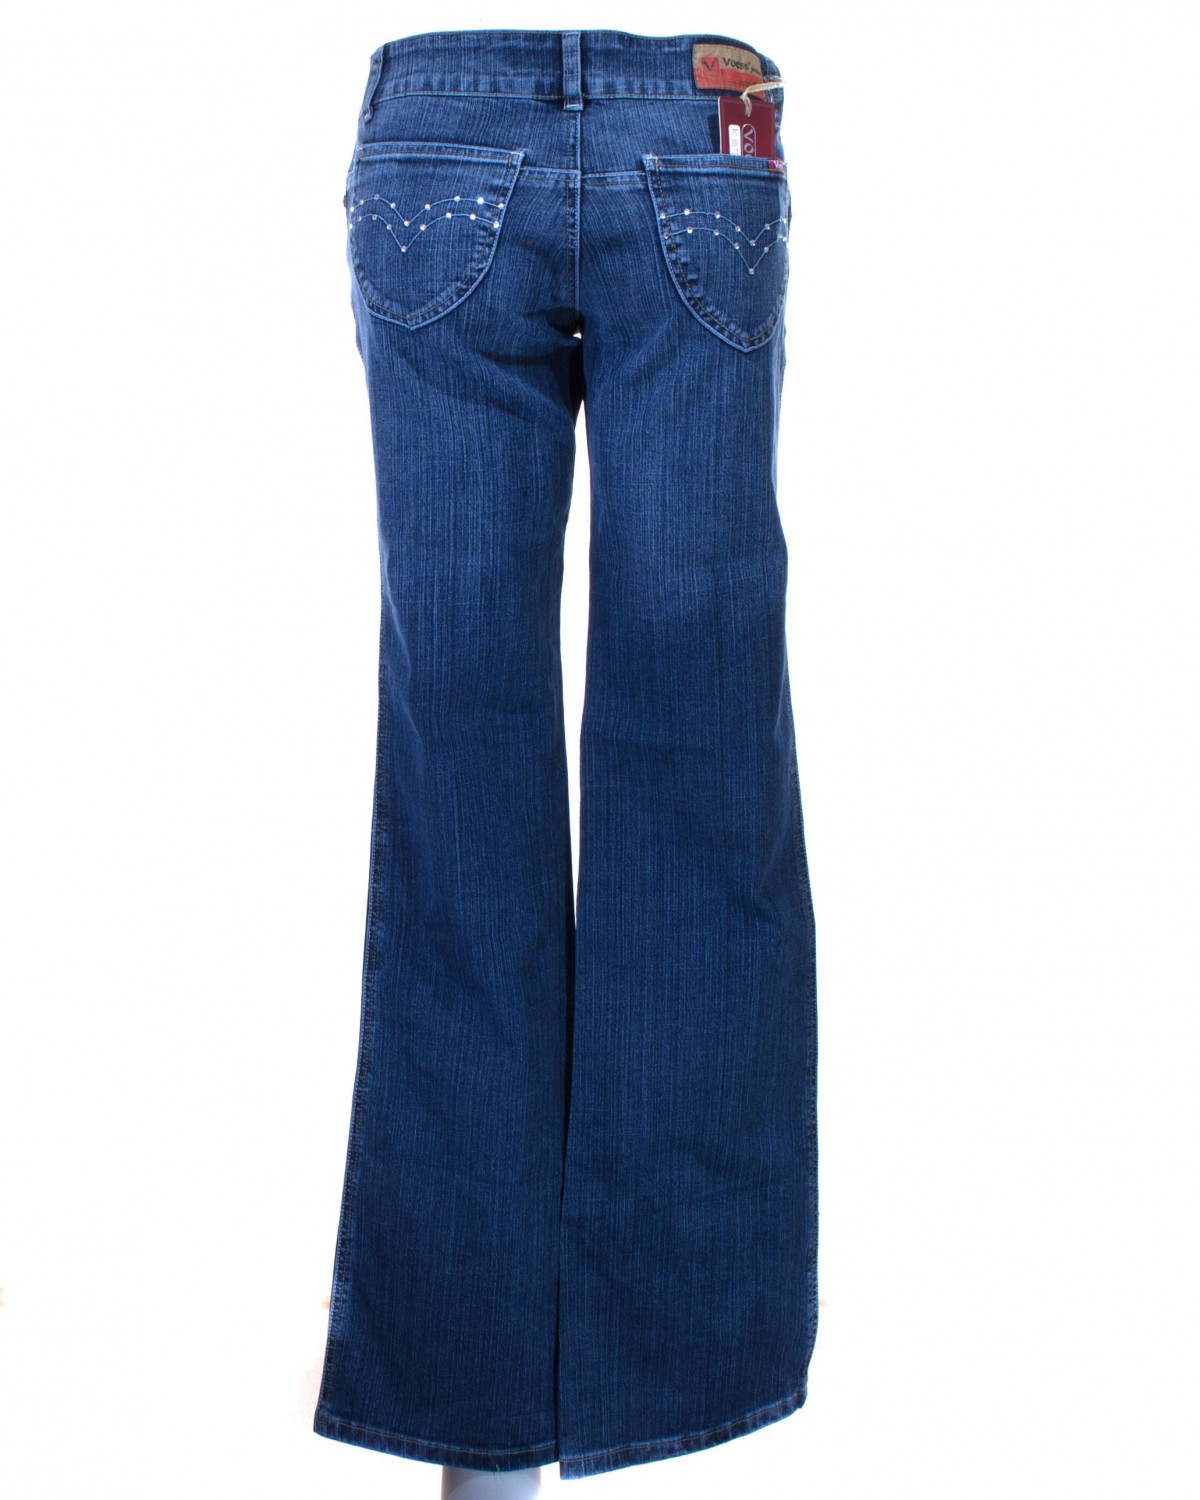 Мужские джинсы Wrangler – непревзойденная классика Их выбирают мужчины разных поколений Вельветовые брюки, Five Star и Texas, летние и другие популярные модели можно найти в фирменной линейке Выбирайте оптимальный размер и традиционное качество